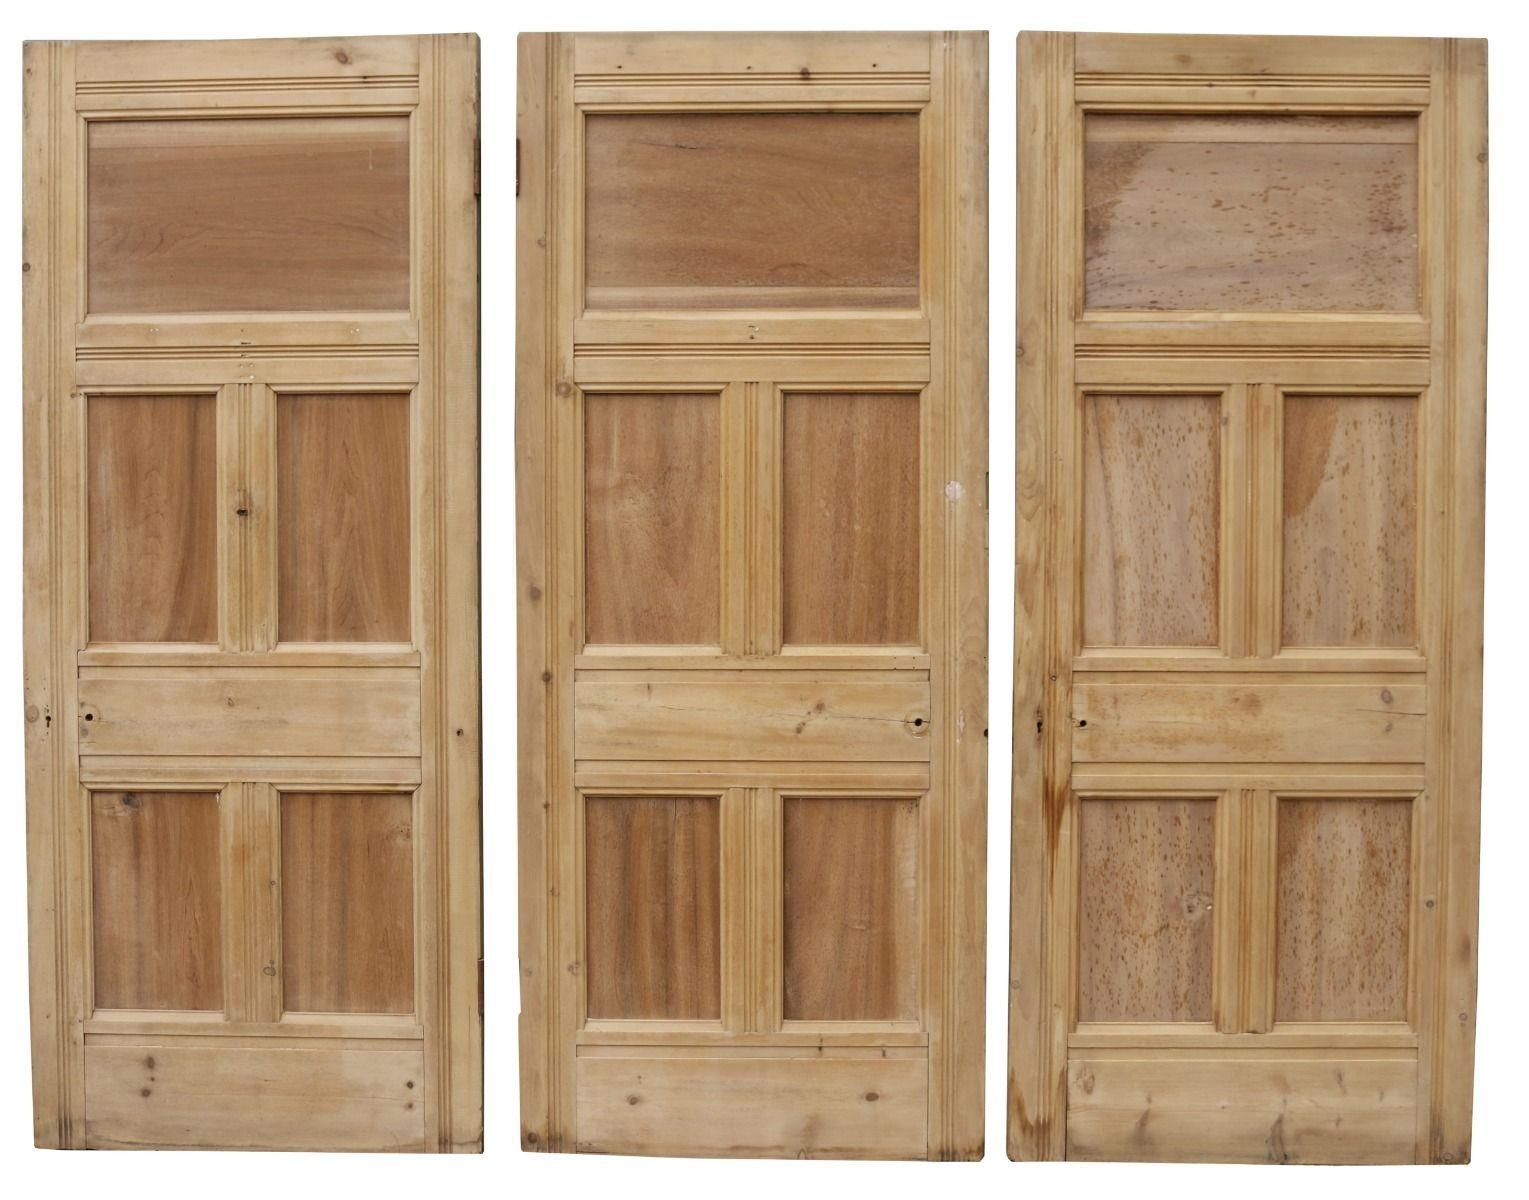 A set of three reclaimed pine stripped doors. These originally were interior doors.

Price is for the set of three doors.

Dimensions:

Door 1:

Height 207 cm

Width 86 cm

Depth 5 cm

 

Door 2:

Height 207 cm

Width 86 cm

Depth 5 cm

 

Door